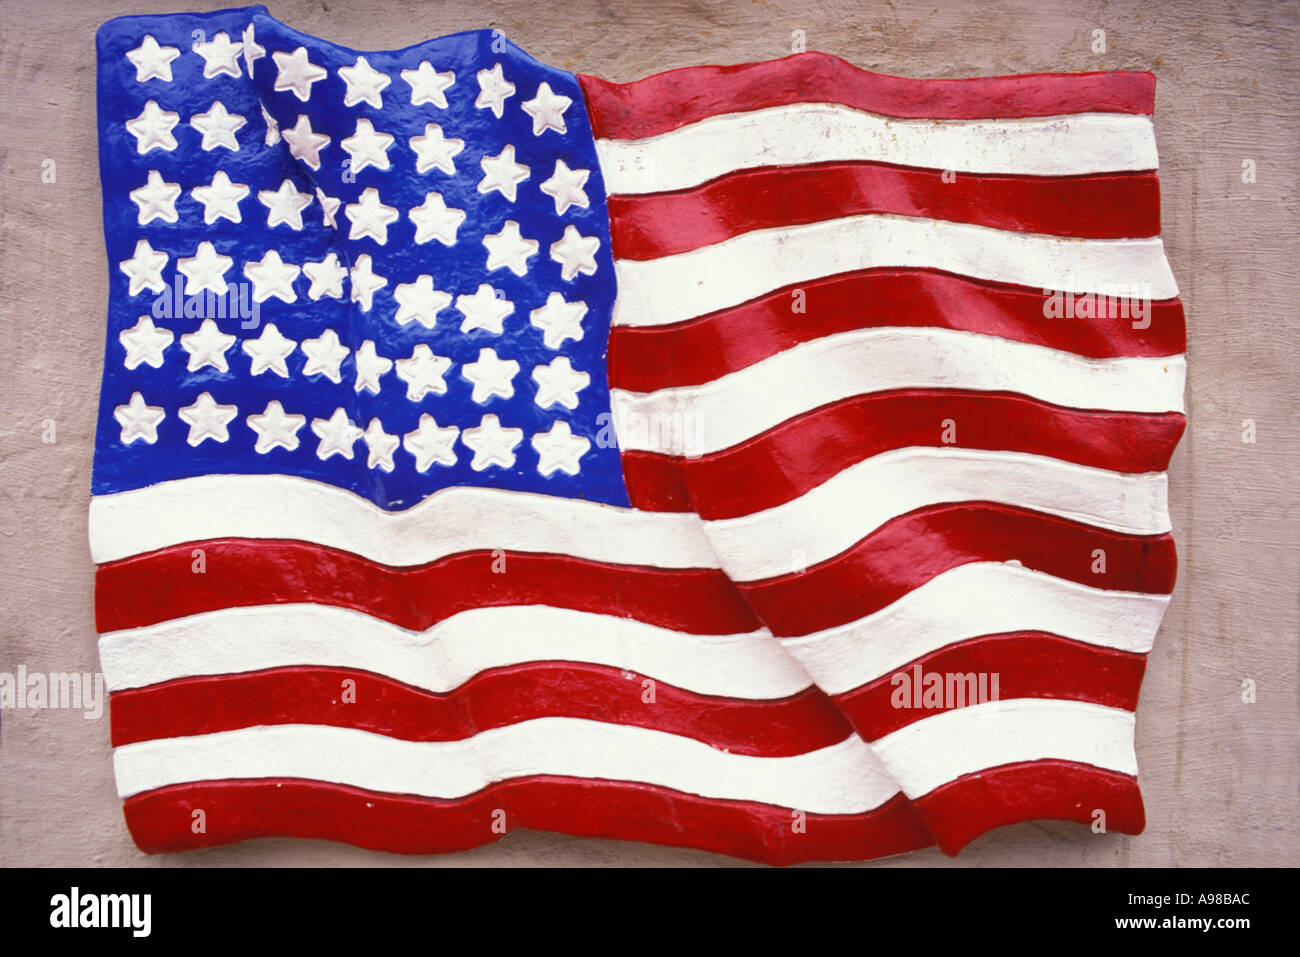 Au début, les drapeaux drapeau américain sur le mur Banque D'Images